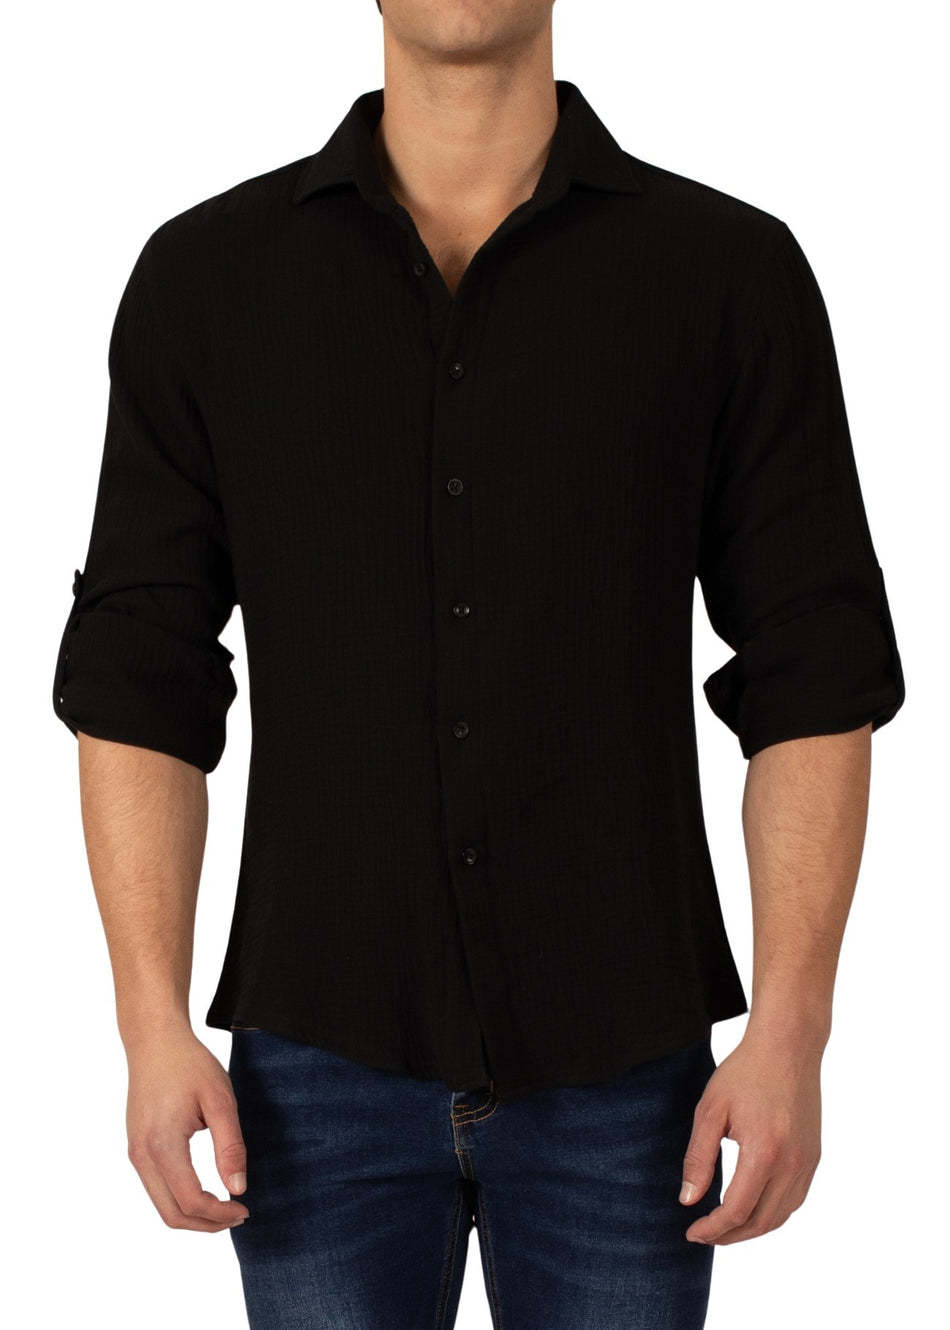 232275 - Black Button Up Long Sleeve Dress Shirt